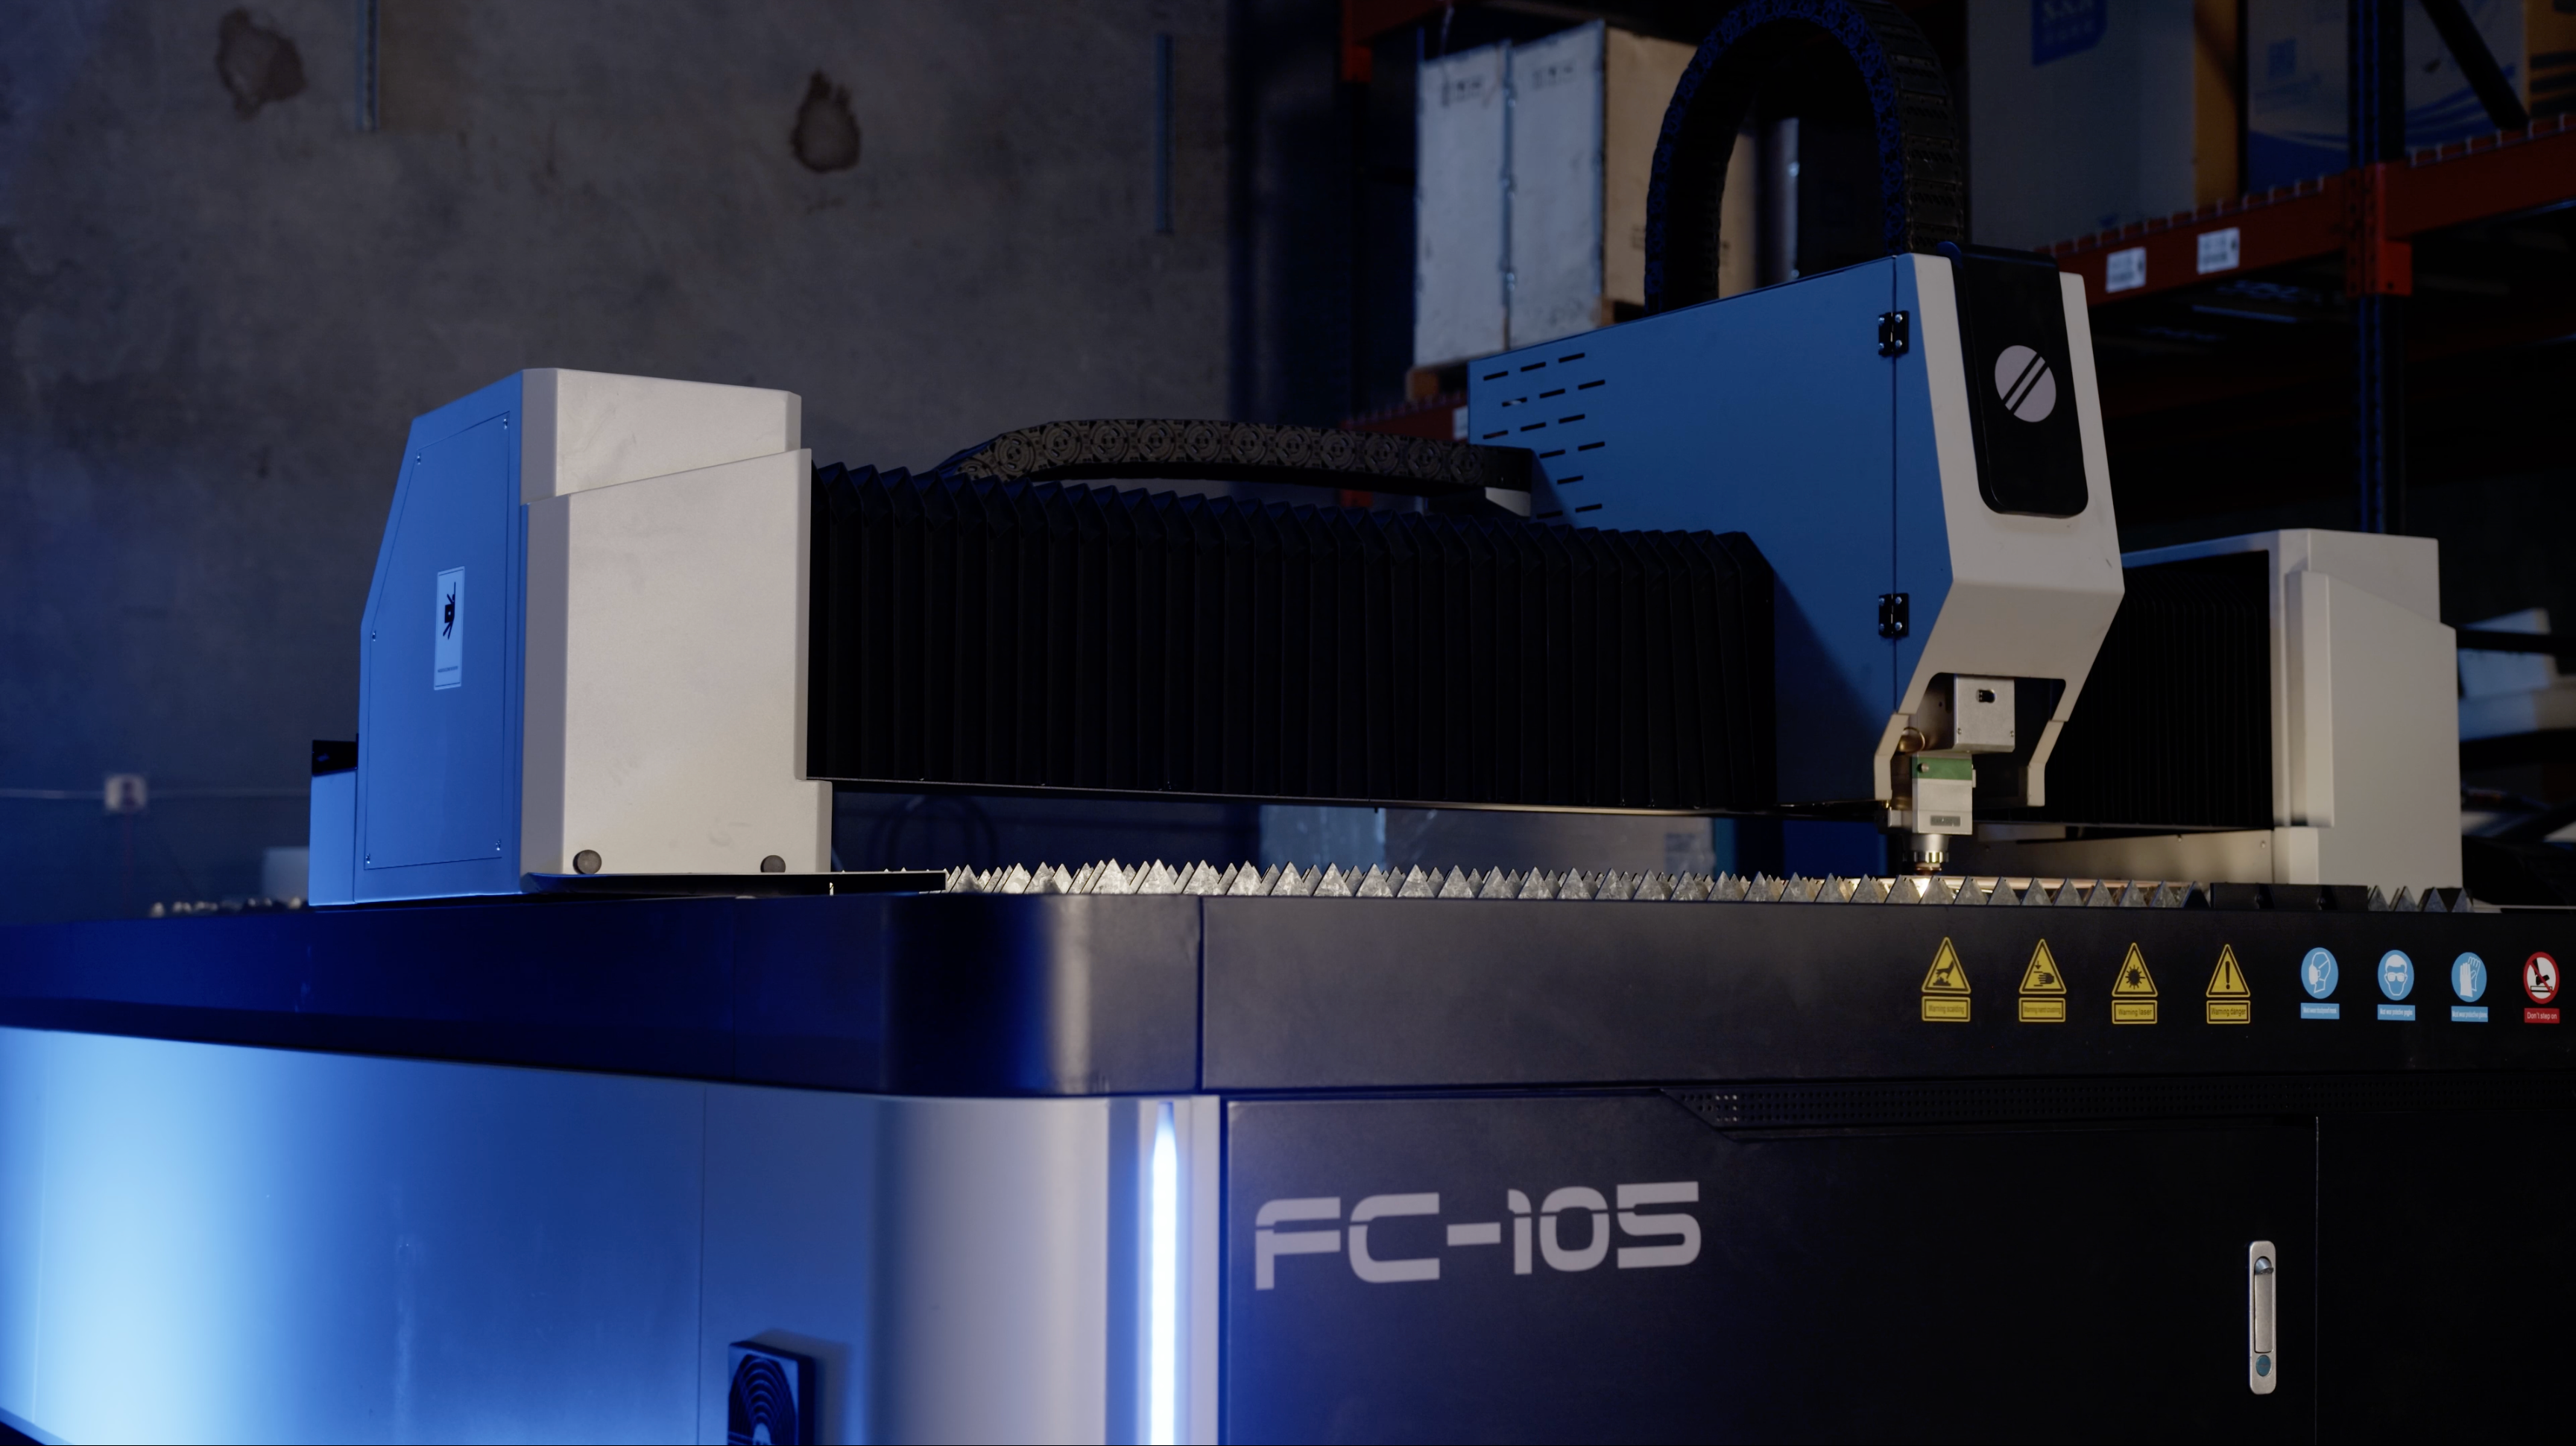 Fiber Laser Cutting Machines, OMTech, FC-105, Cutter, Metal Fabrication